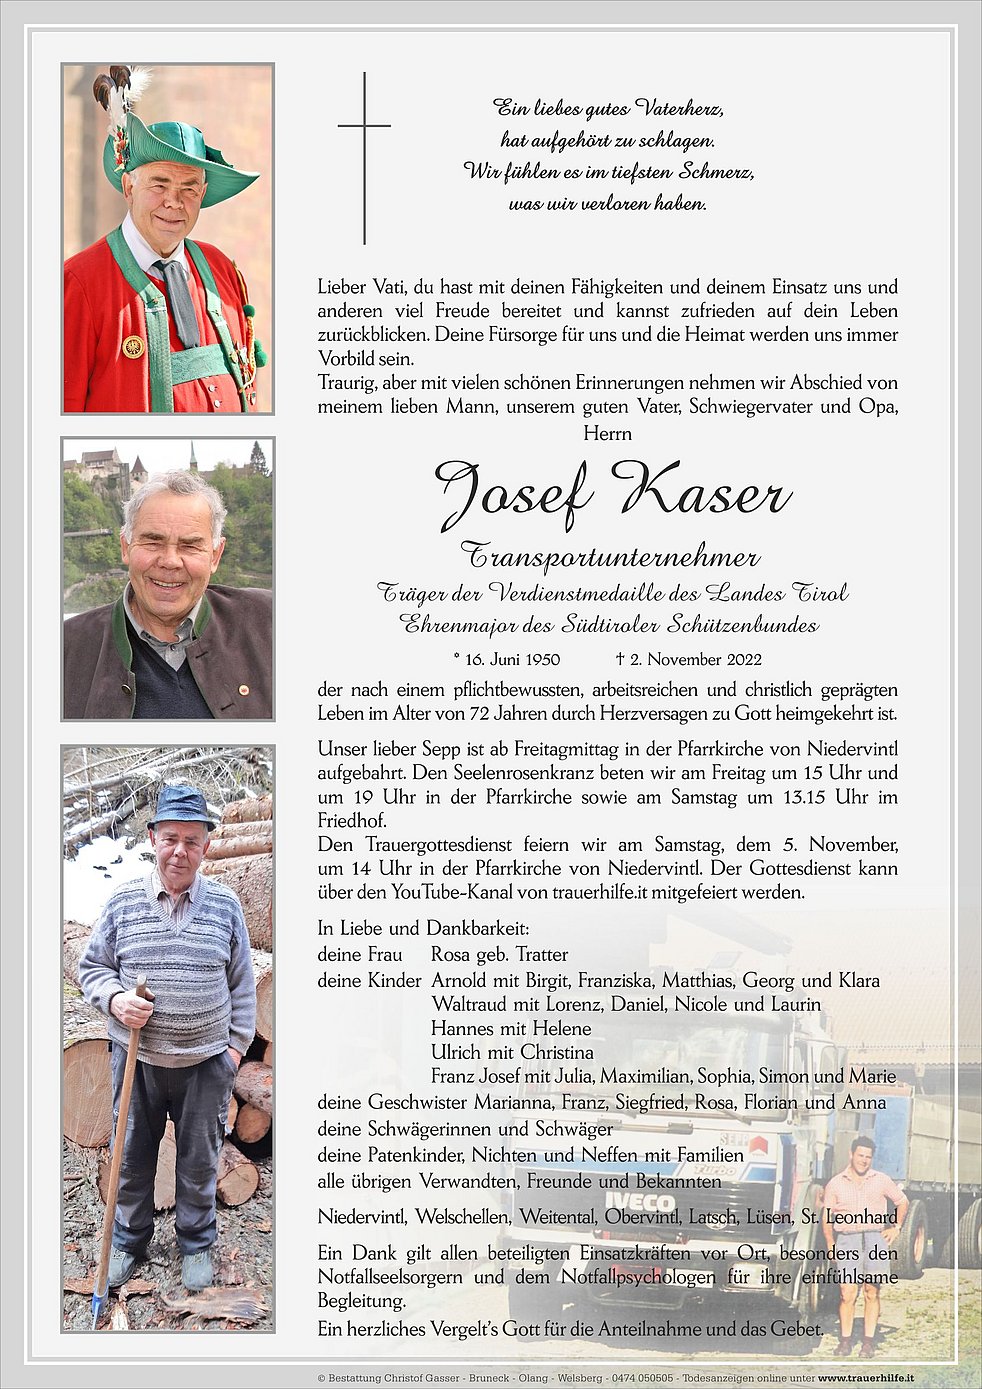 In Gedenken an Josef Kaser